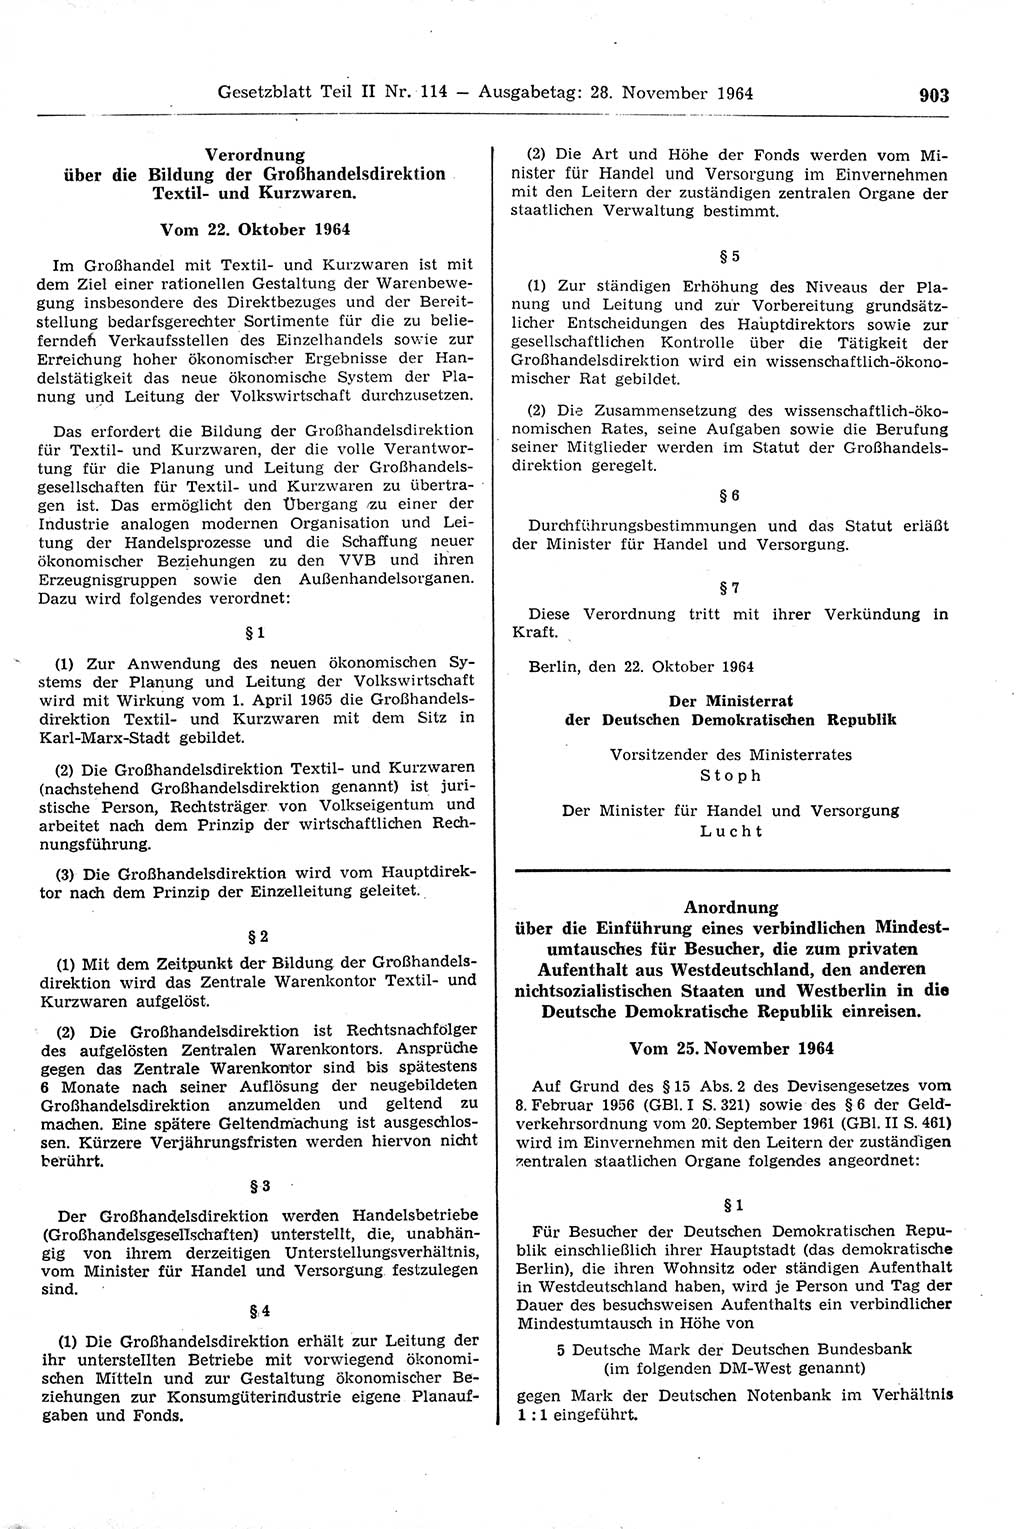 Gesetzblatt (GBl.) der Deutschen Demokratischen Republik (DDR) Teil ⅠⅠ 1964, Seite 903 (GBl. DDR ⅠⅠ 1964, S. 903)